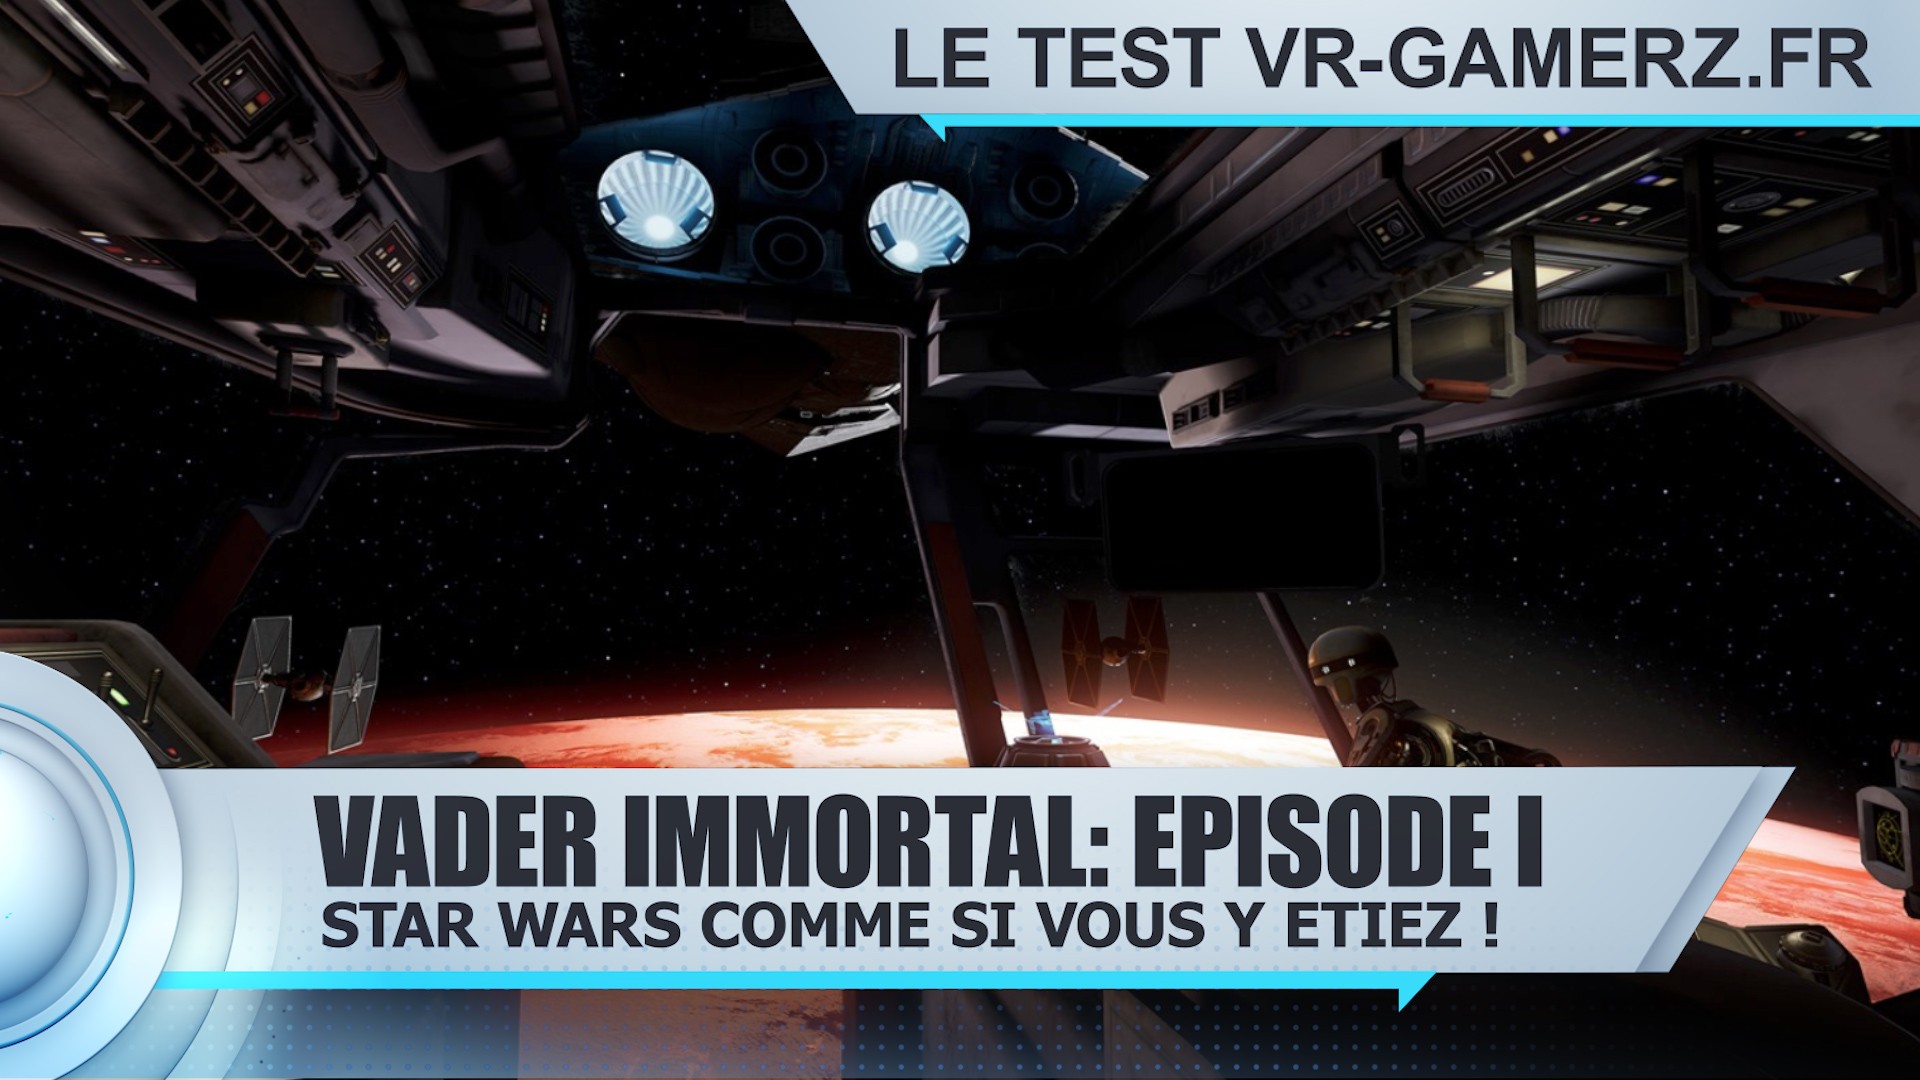 Test Vader Immortal: Episode I Oculus quest